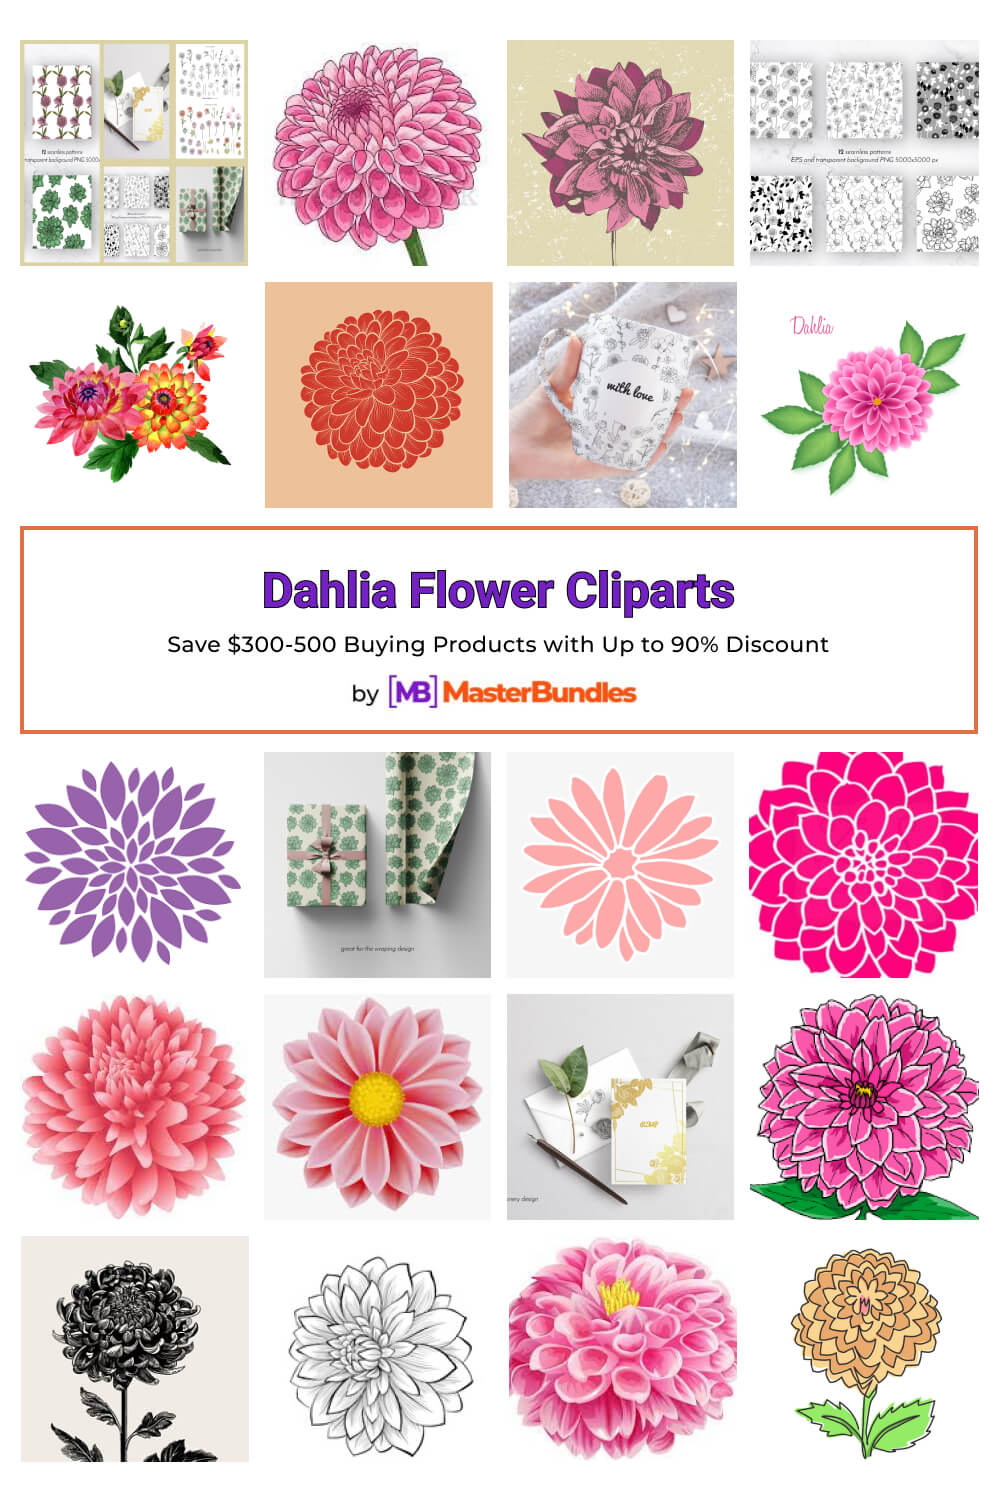 dahlia flower cliparts pinterest image.